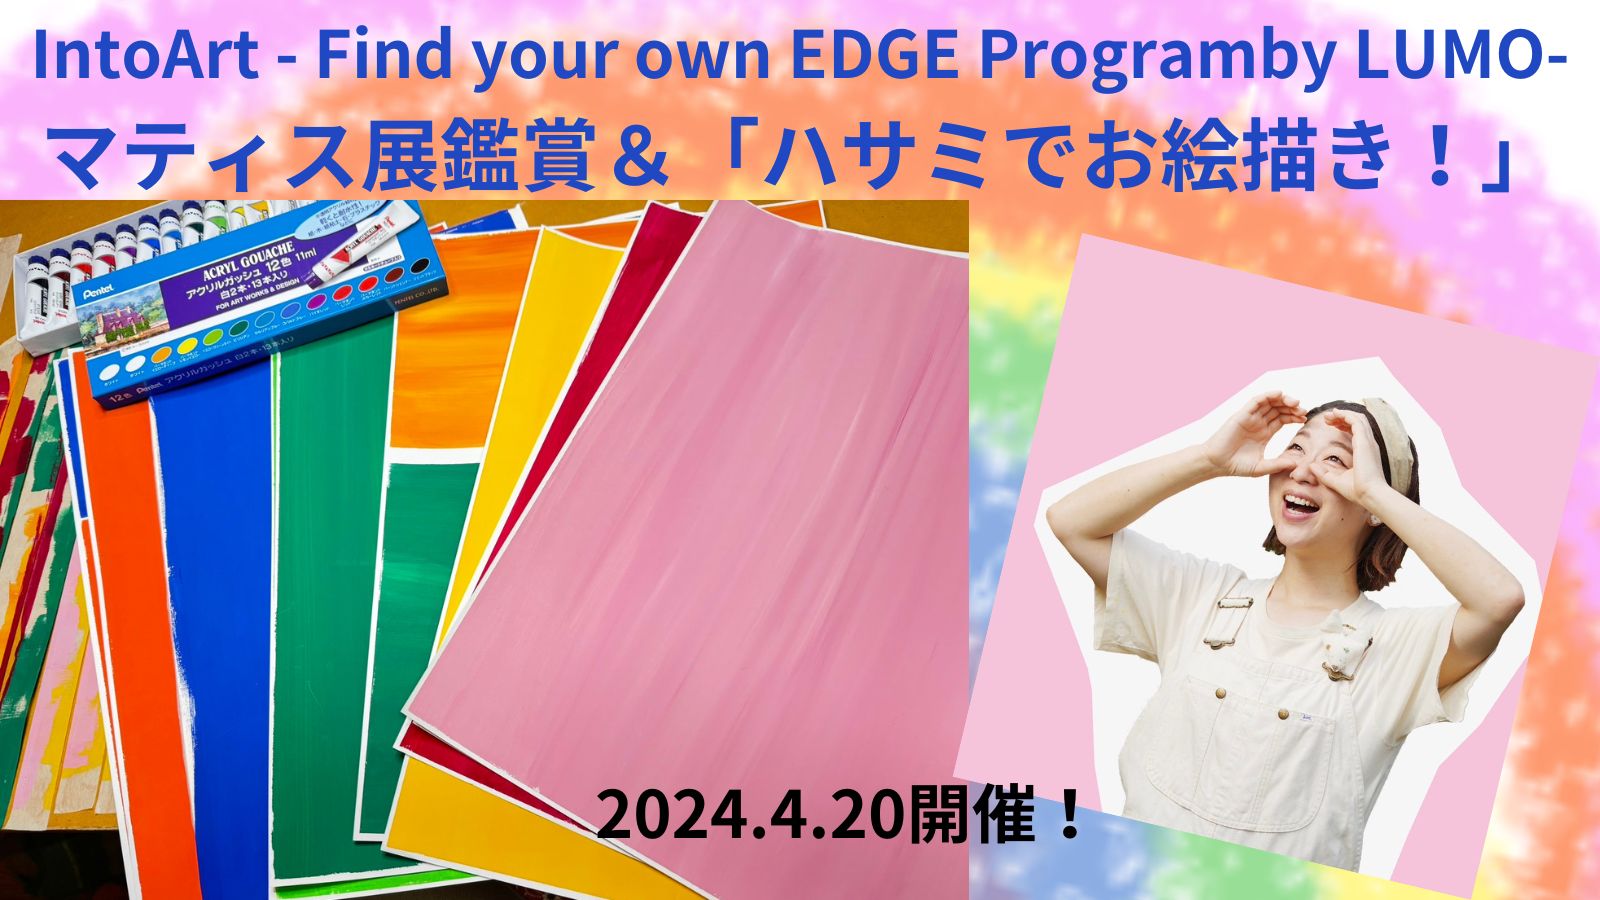 L[^[̒OĂďCAƂ̖aWAhoCU[ `qǂ̉\oIntoArt - Find your own EDGE Program -by LUMO` 420Ƀ[NVbvJ